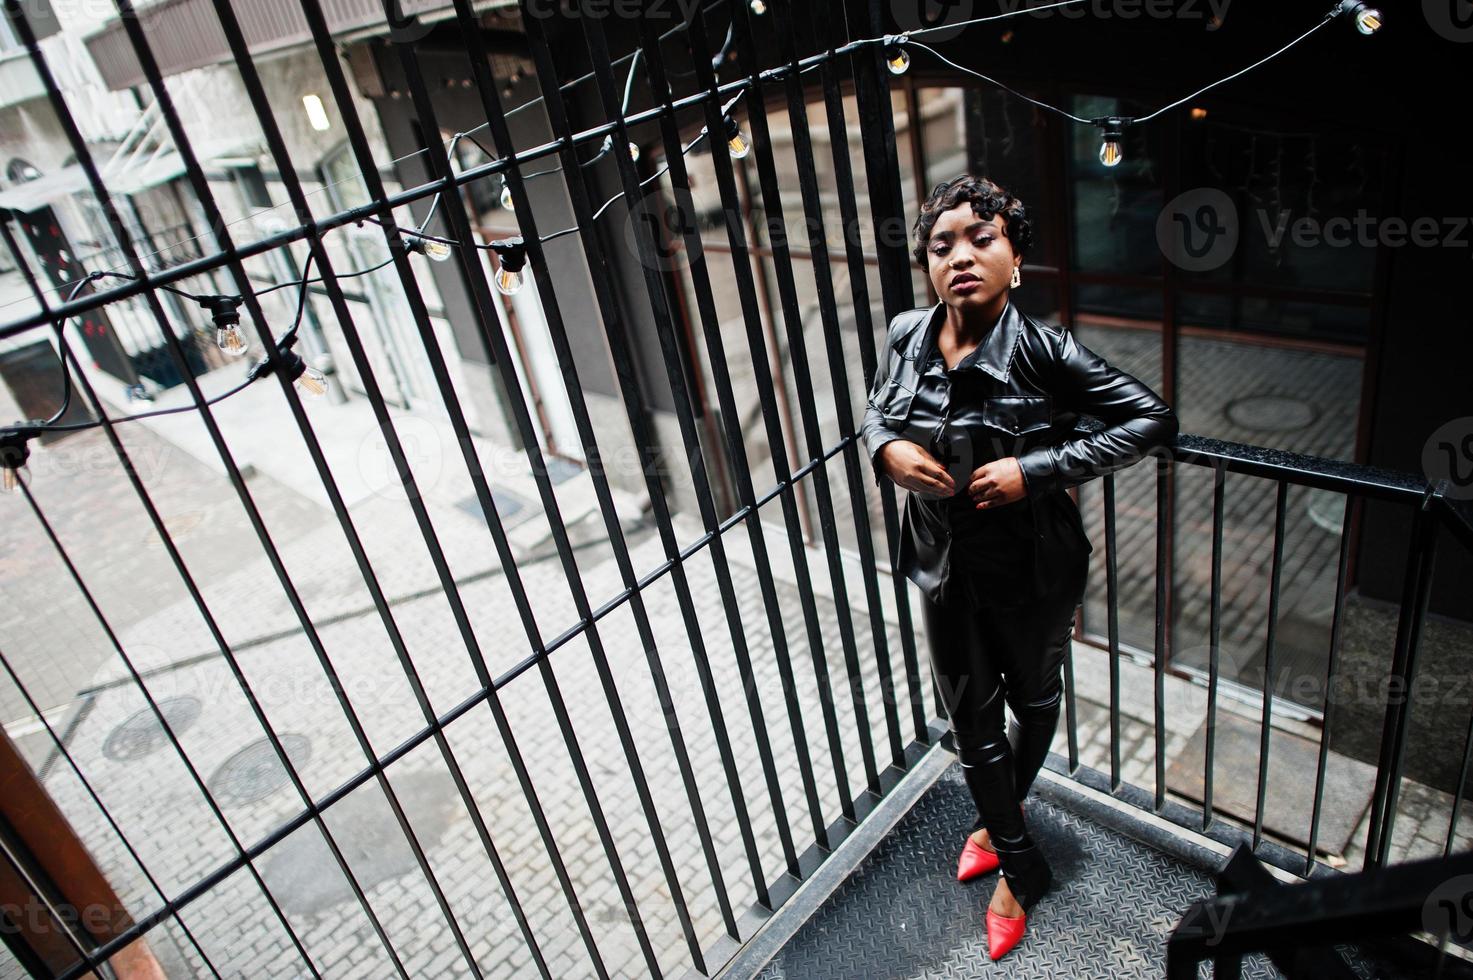 moda hermosa mujer afroamericana posando en chaqueta de cuero negro y pantalones en la calle. foto